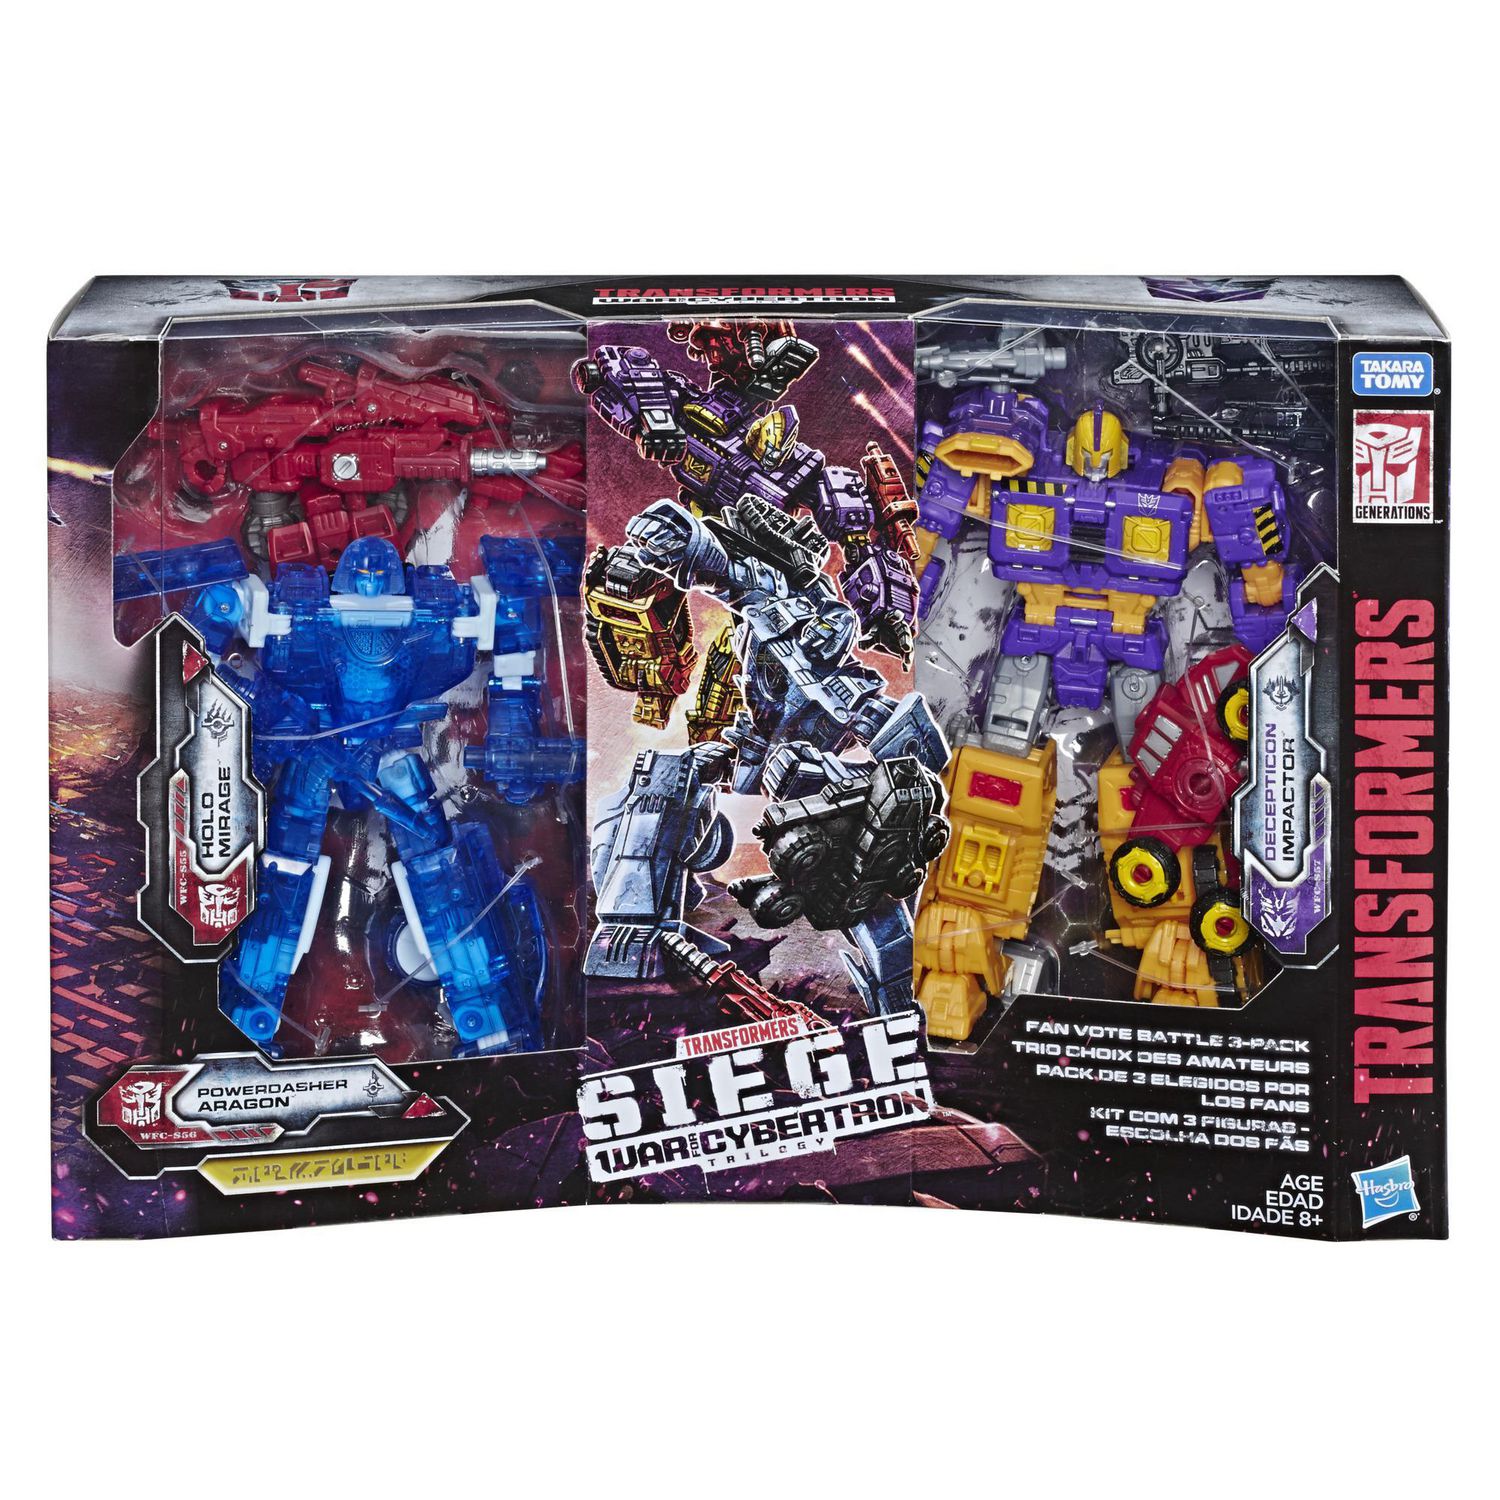 In Hand Transformers Siege War Aragon Mirage impactor Fan-Vote battle ToysHero 